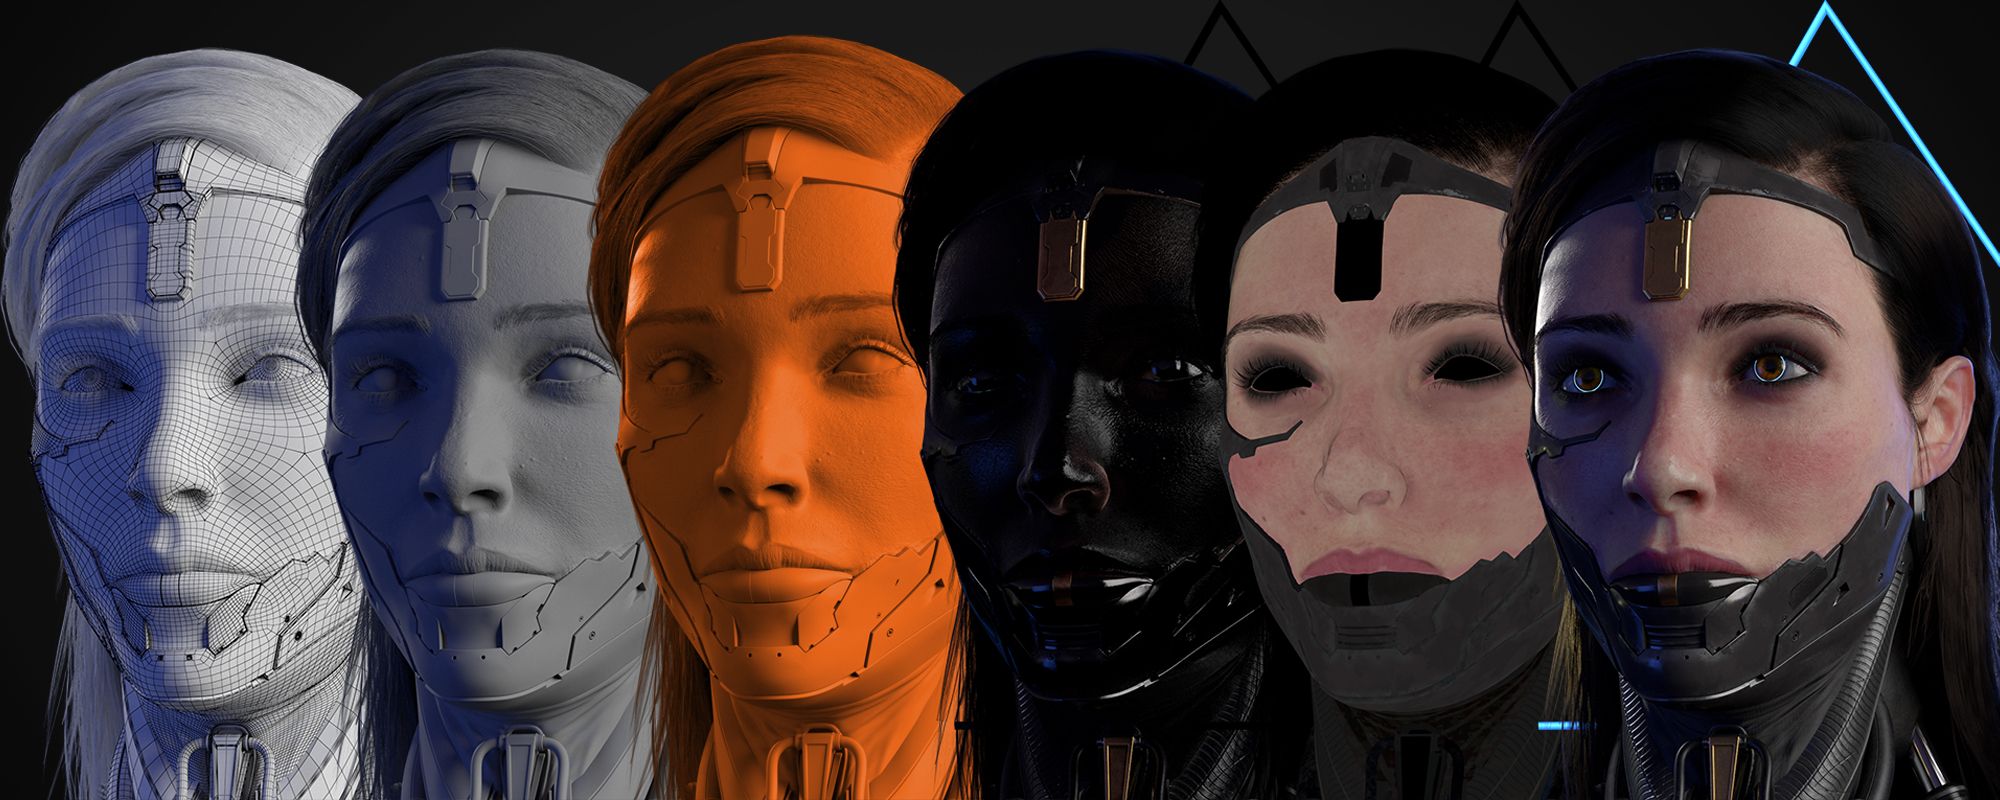 用Maya和Zbrush制作3D超写实女性CG角色过程分享